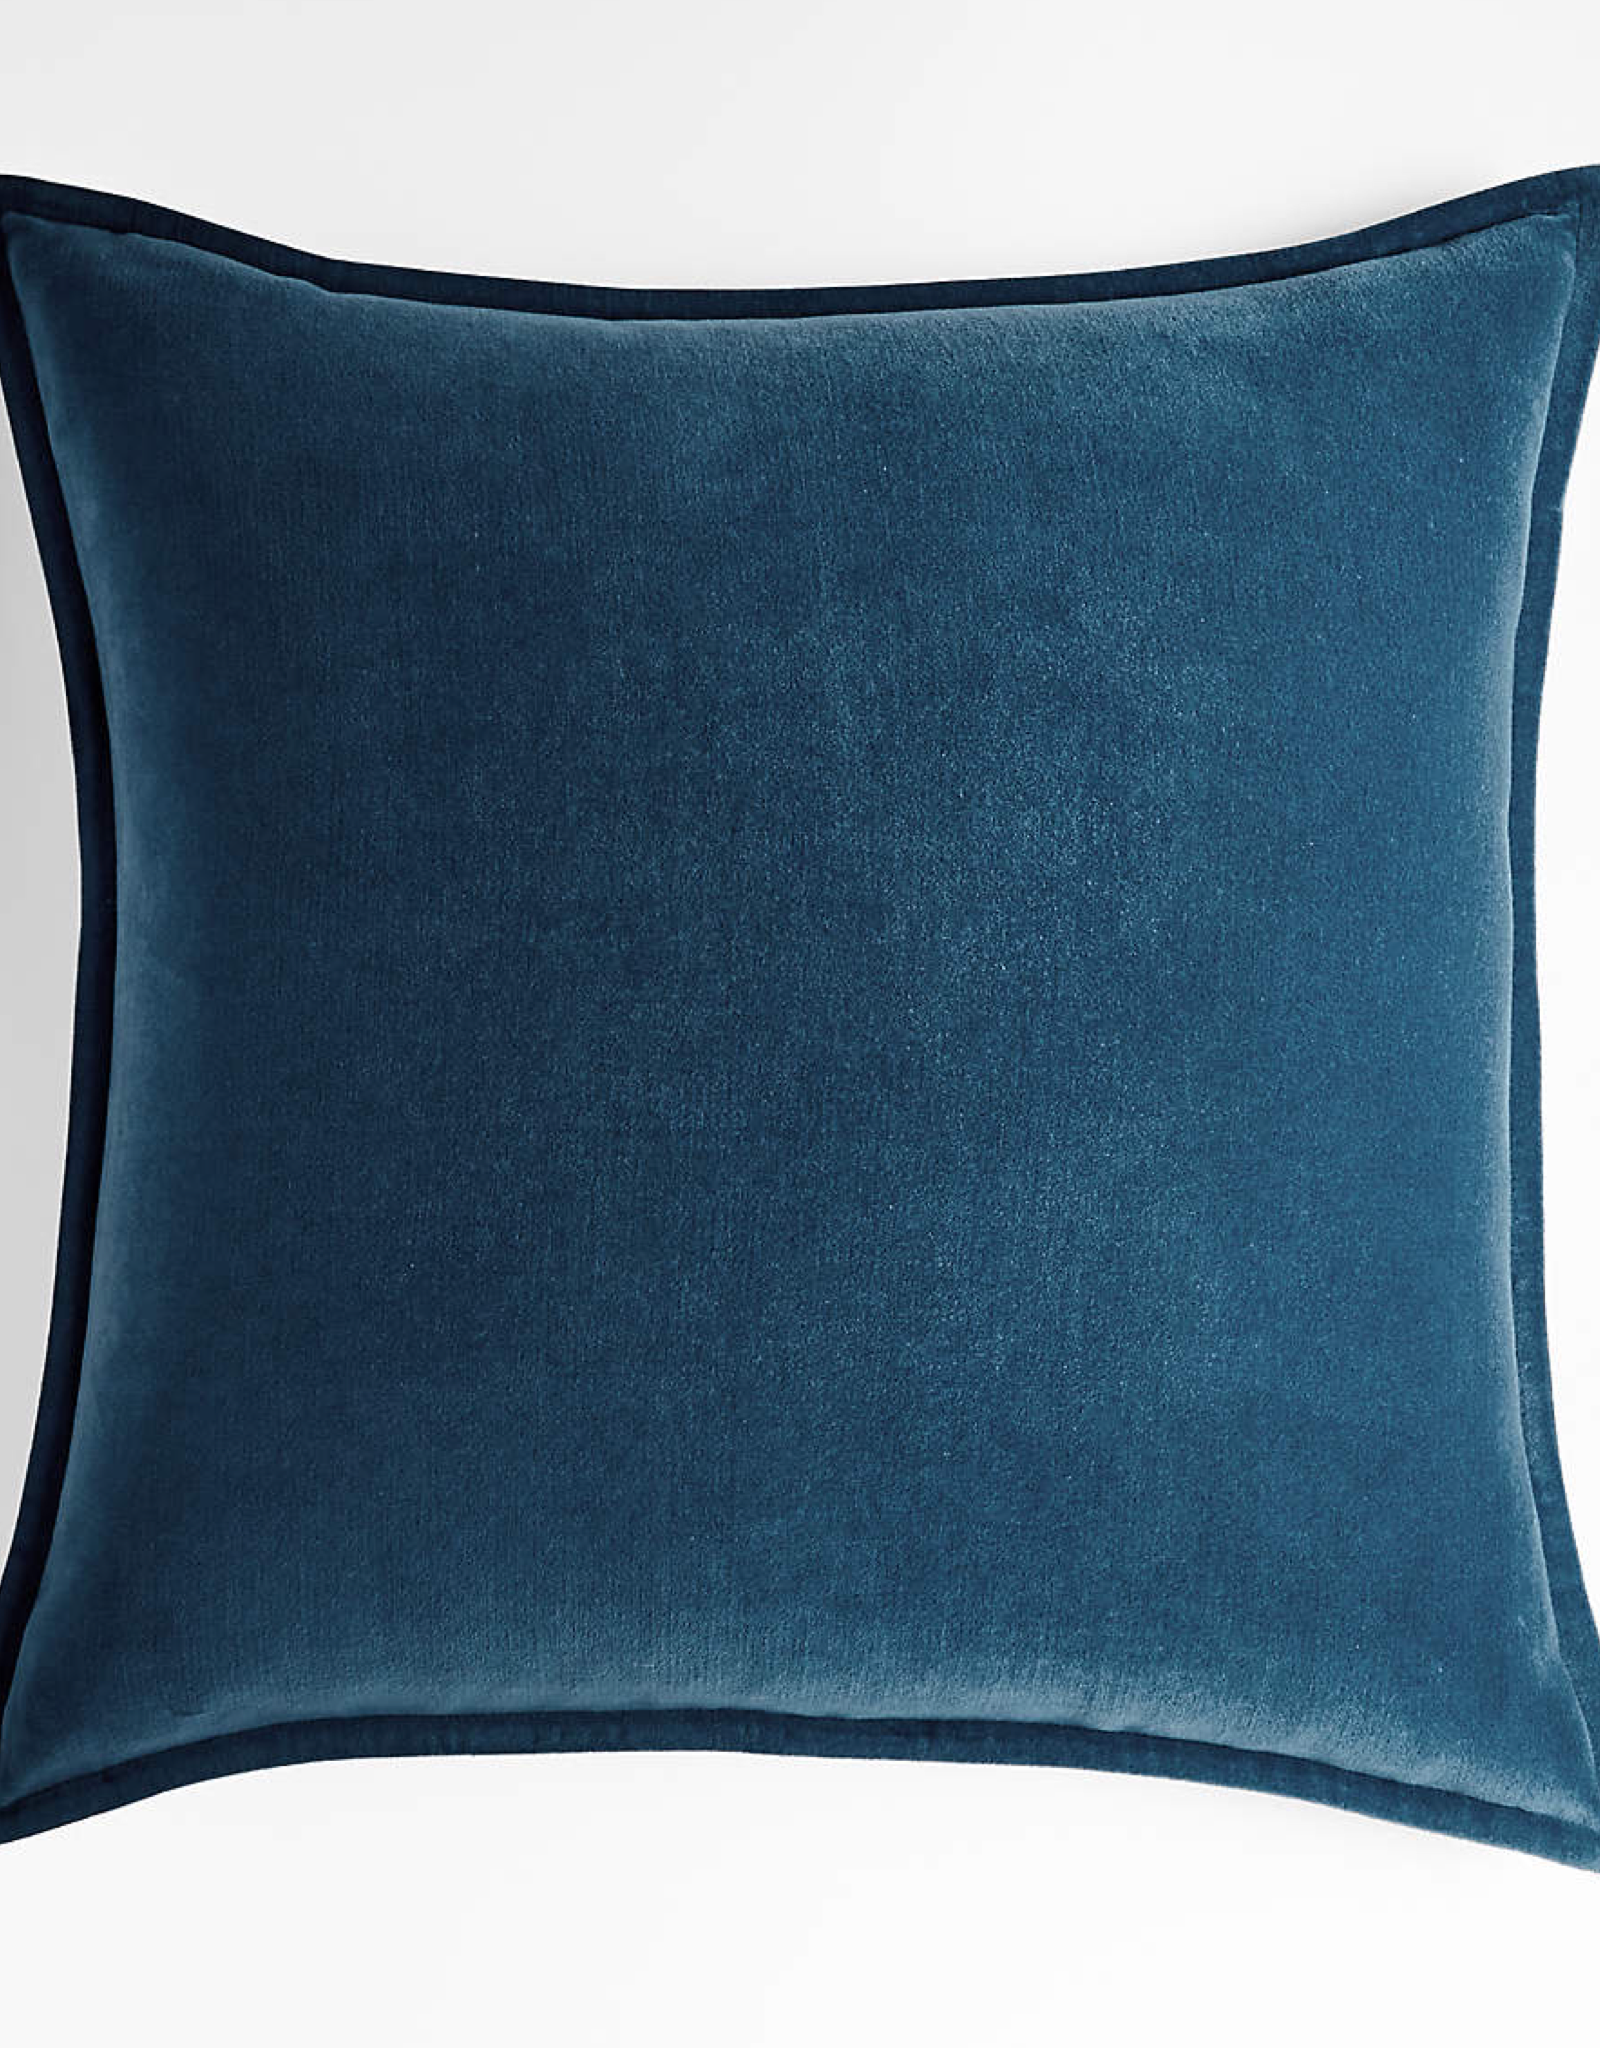 Daniadown Cushions Daniadown Dutch Velvet Persian Blue Euro 26 x 26